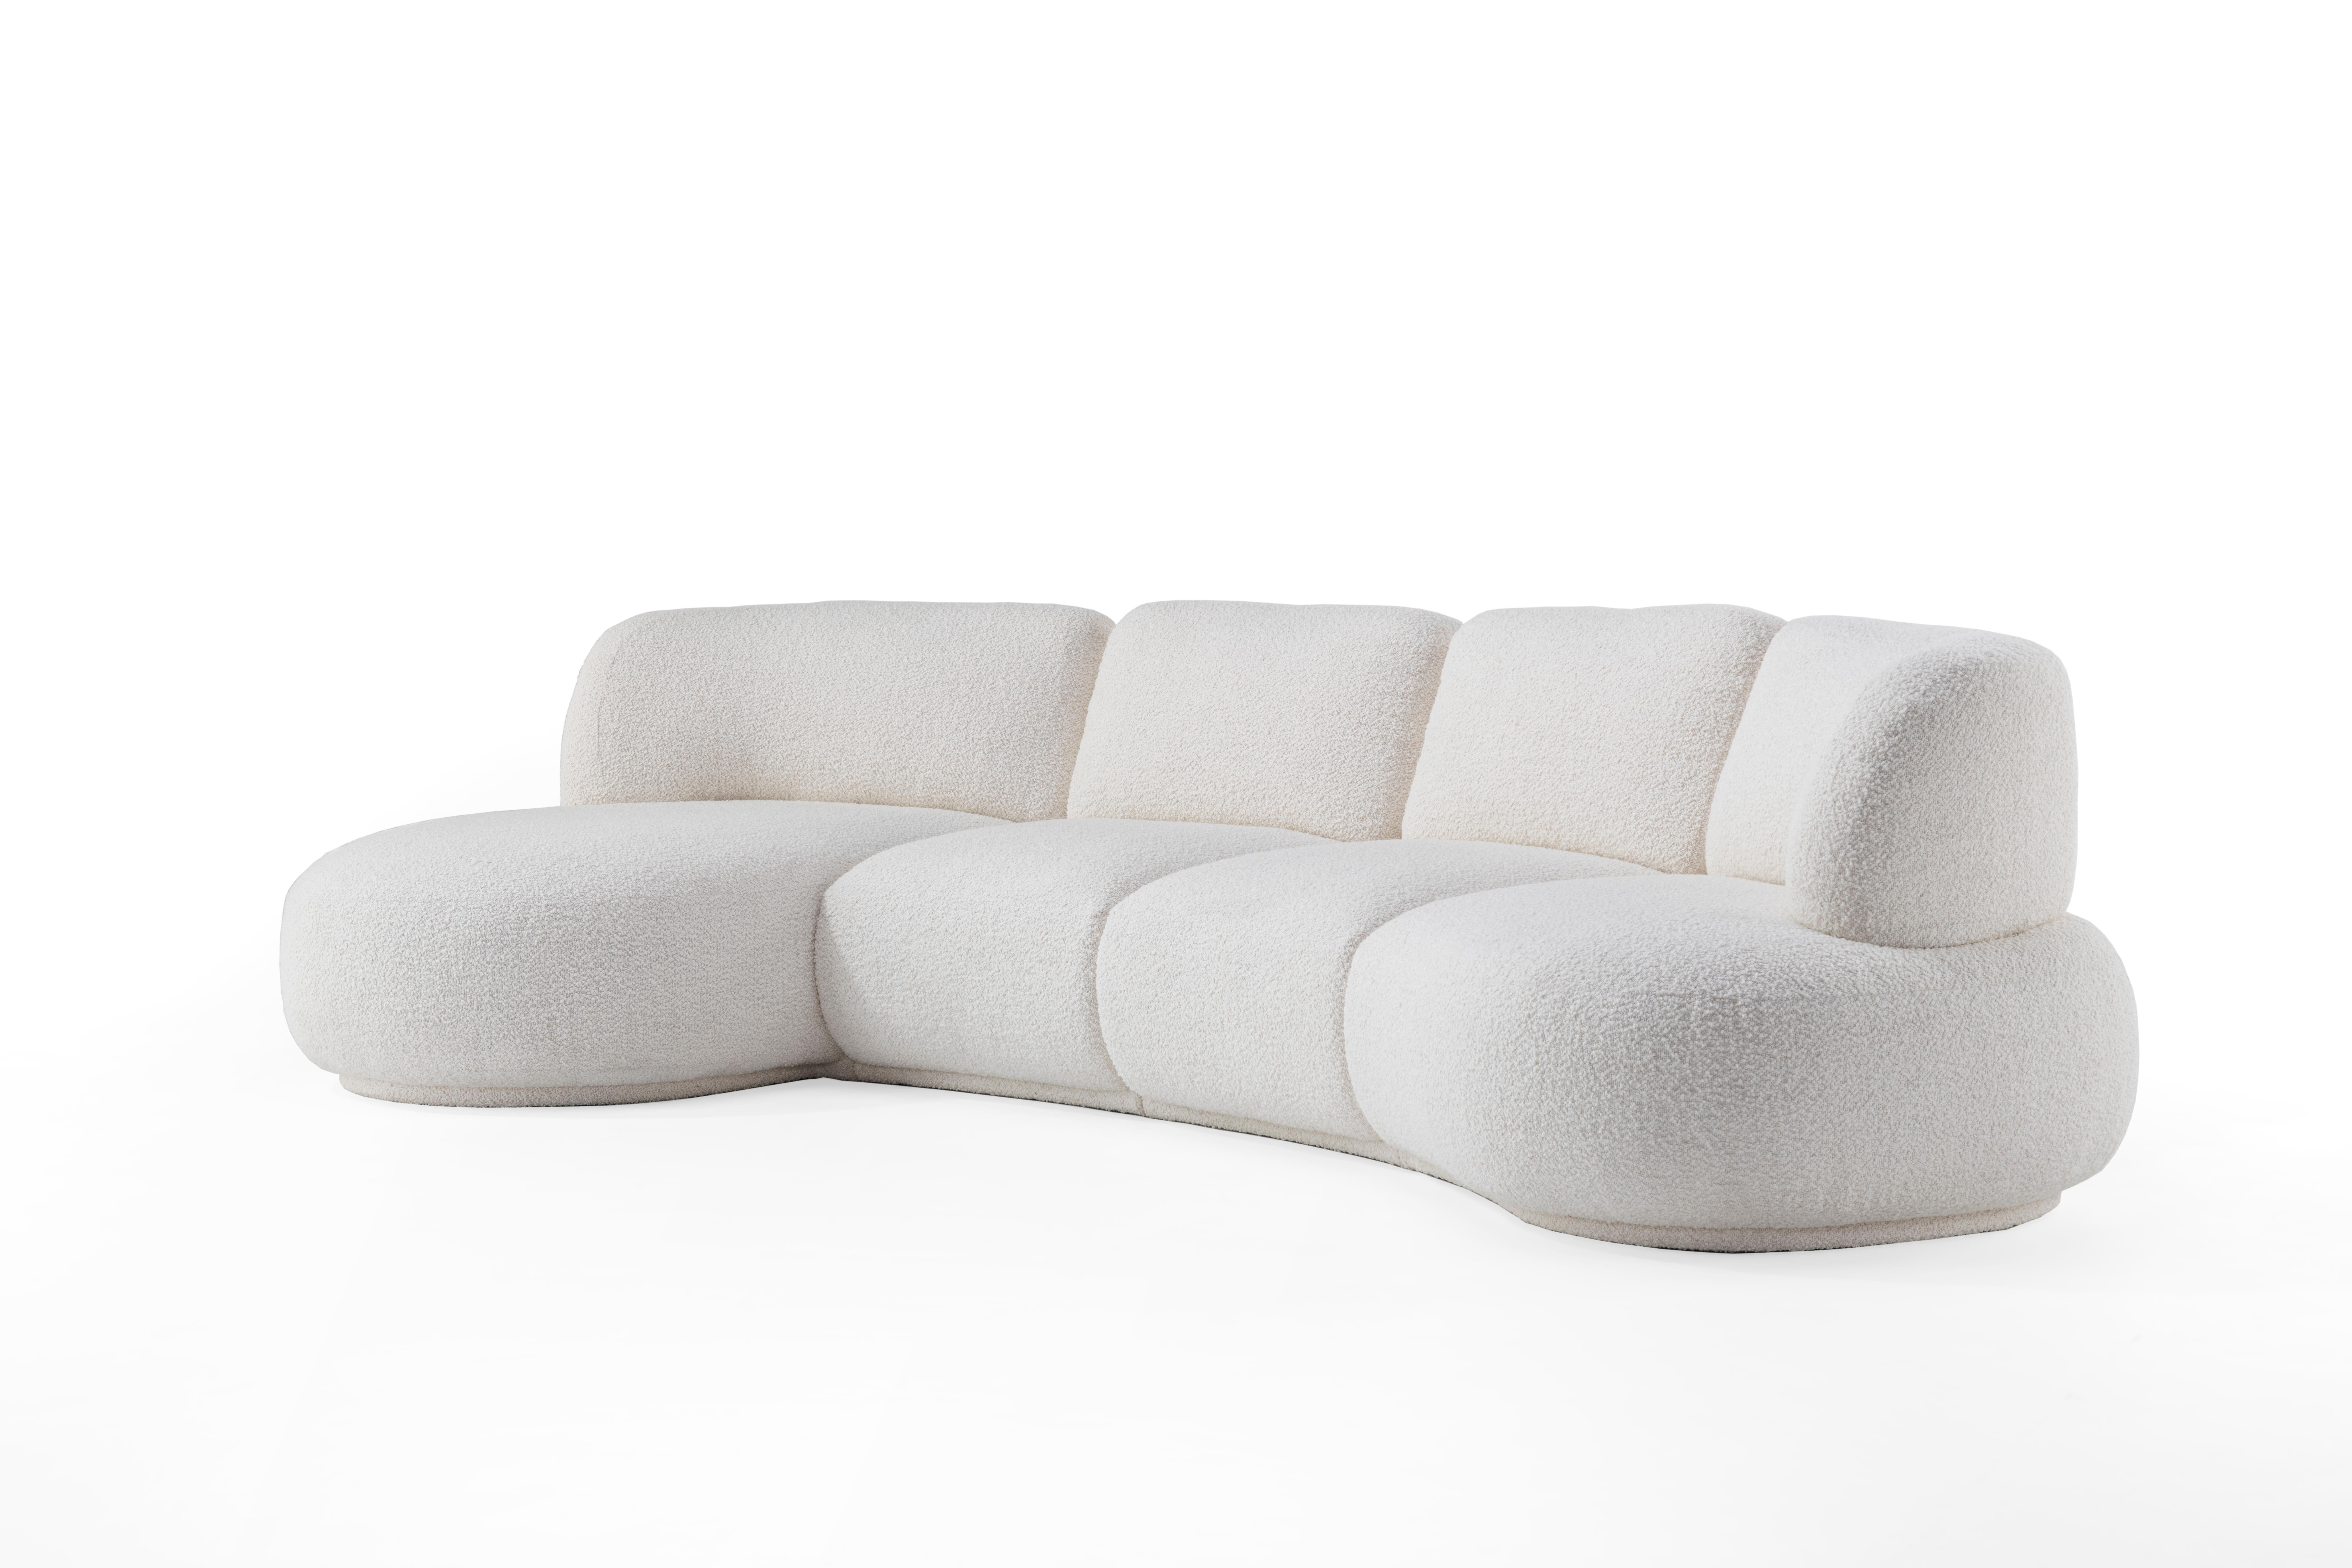 Der unbändige Wunsch, die perfekte Balance eines modularen Sofas zu erreichen, führte unser Designteam zu HANJI. Dieses modulare Sofa mit geschwungenen Formen, das auf ein afrikanisches Wort zurückgeht und den Namen 